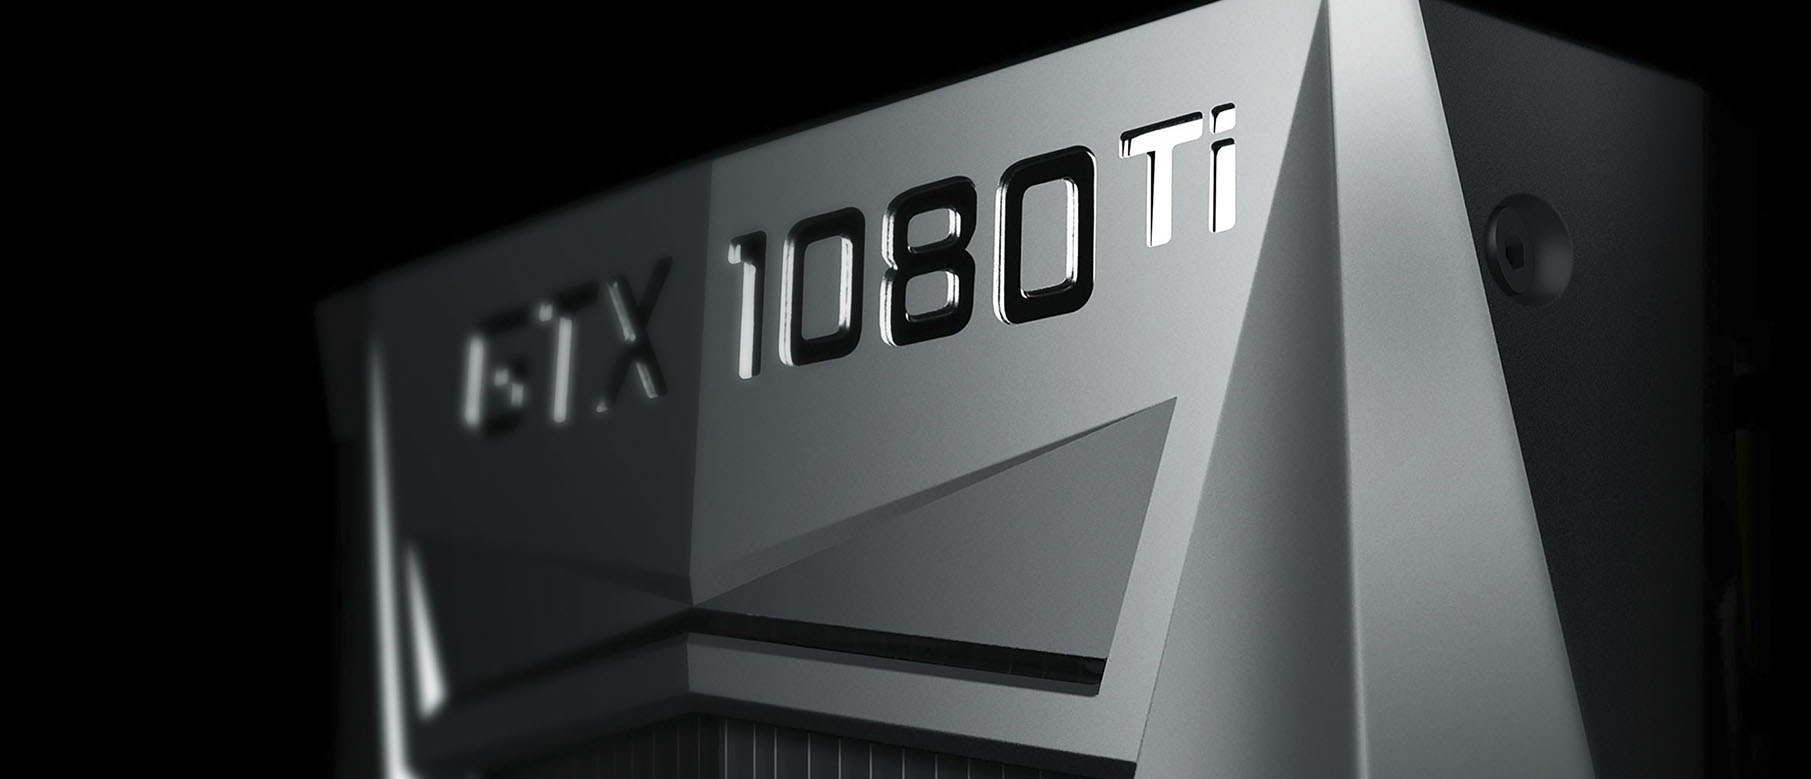 Изображение к Обзоры GeForce GTX 1080 Ti - лучшая GPU на данный момент